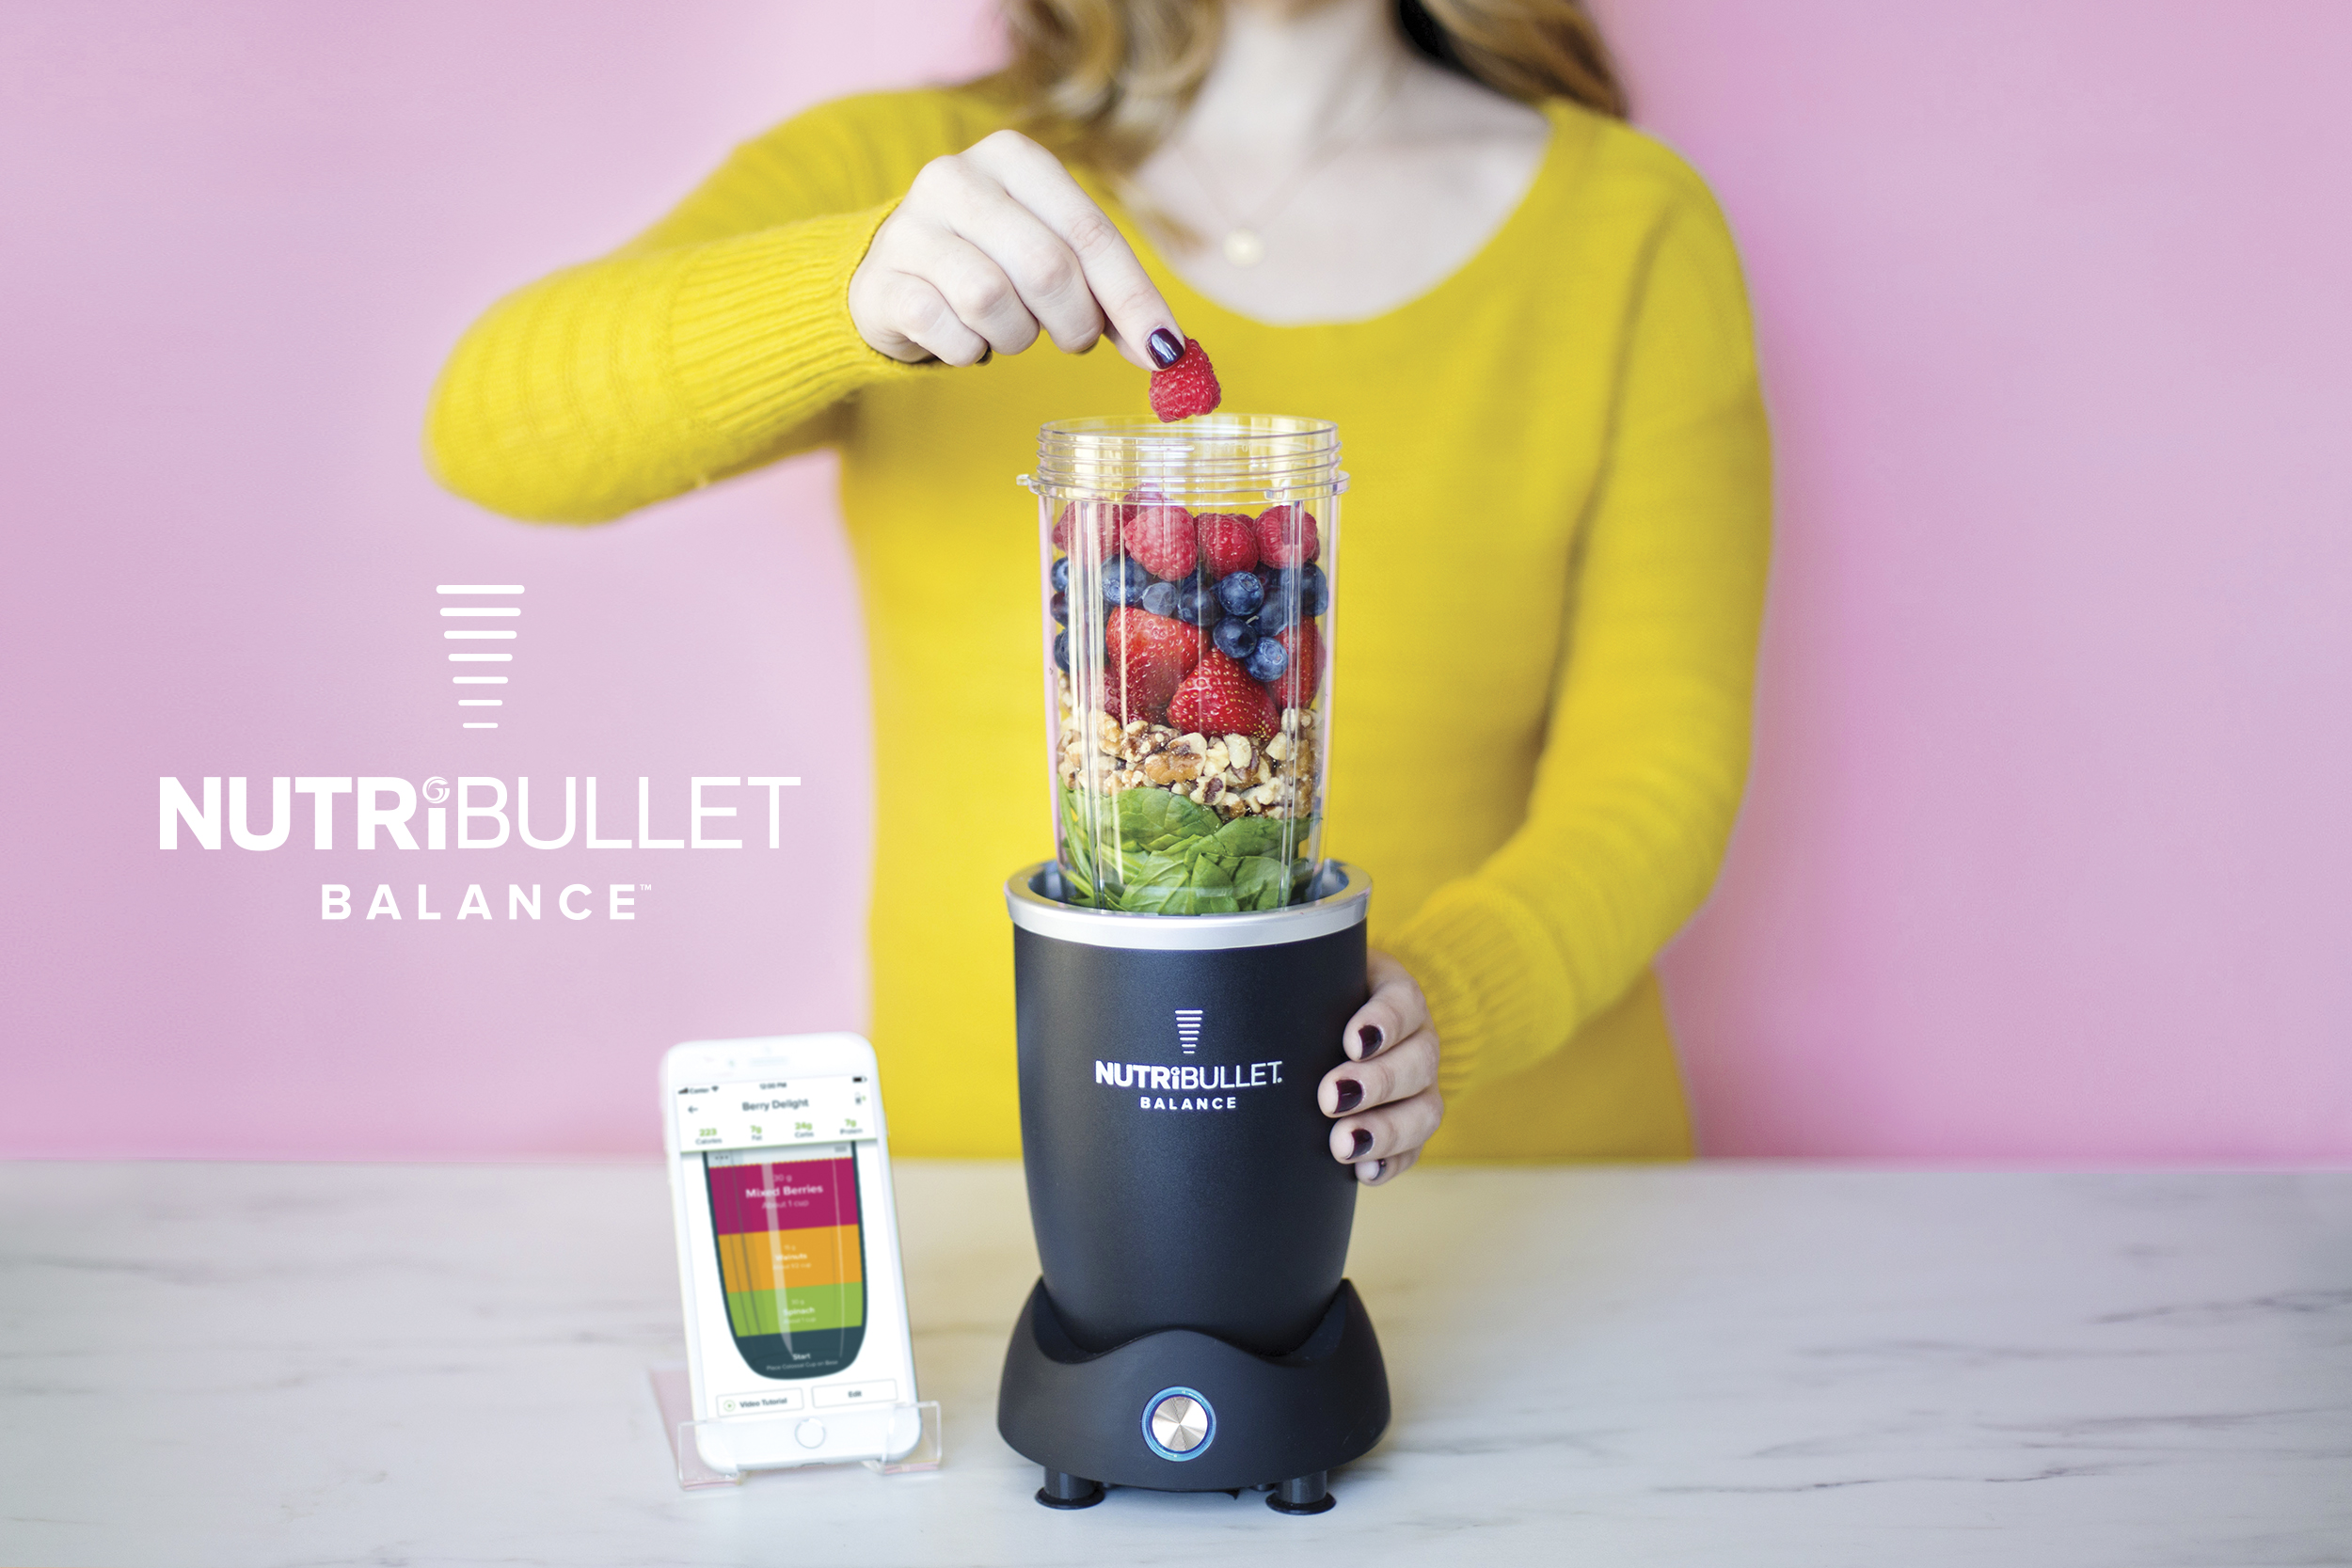 Nutribullet Balance Smart Blender